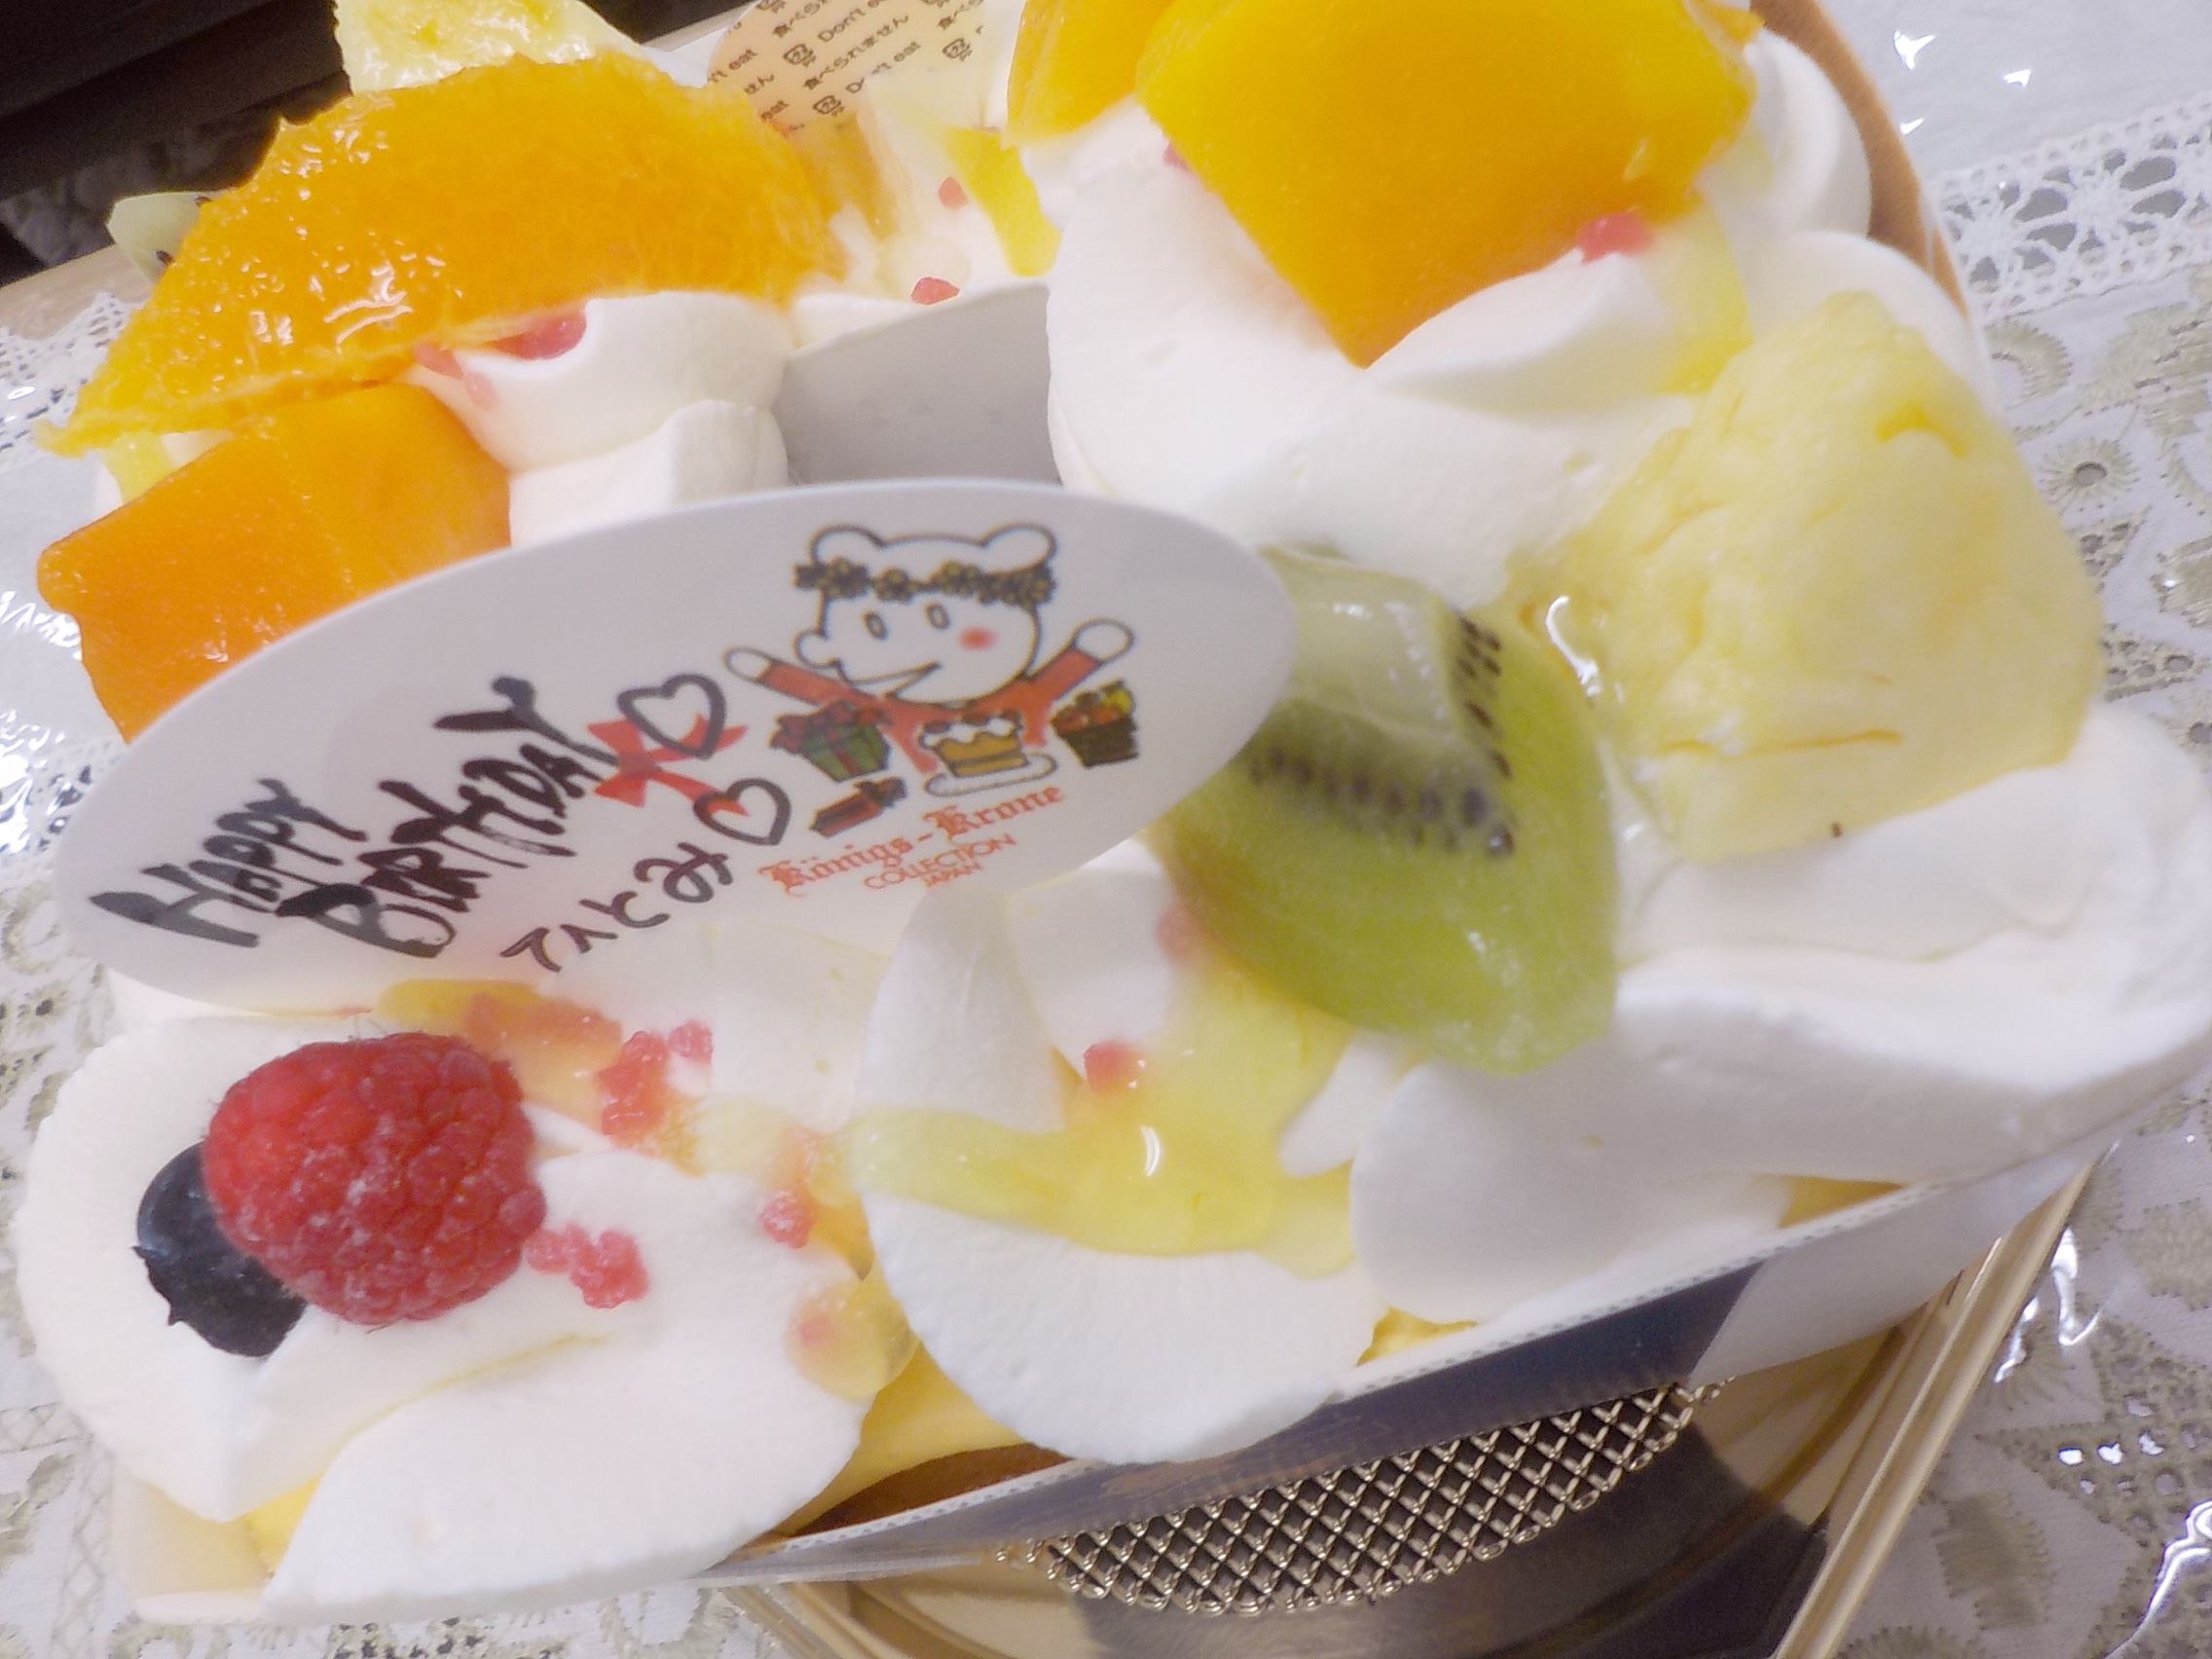 ケーニヒスクローネのフルーツパイケーキとホールチーズケーキ 大阪 奈良グルメのブログ ミシュランごっこ